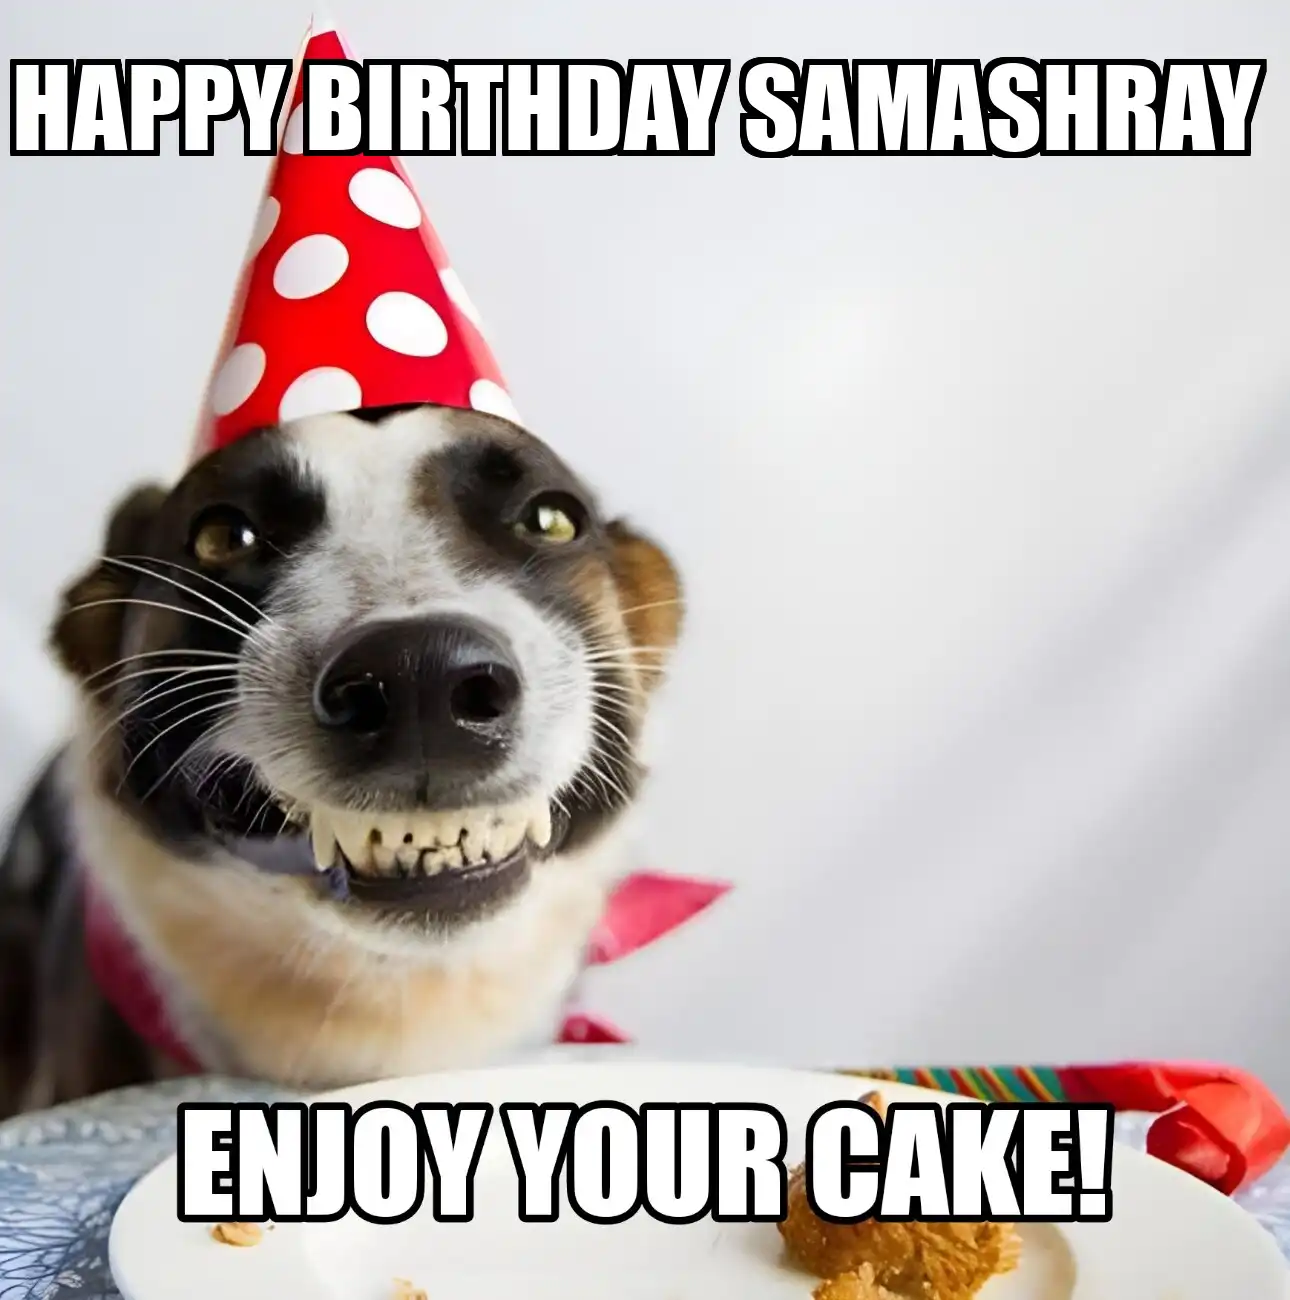 Happy Birthday Samashray Enjoy Your Cake Dog Meme